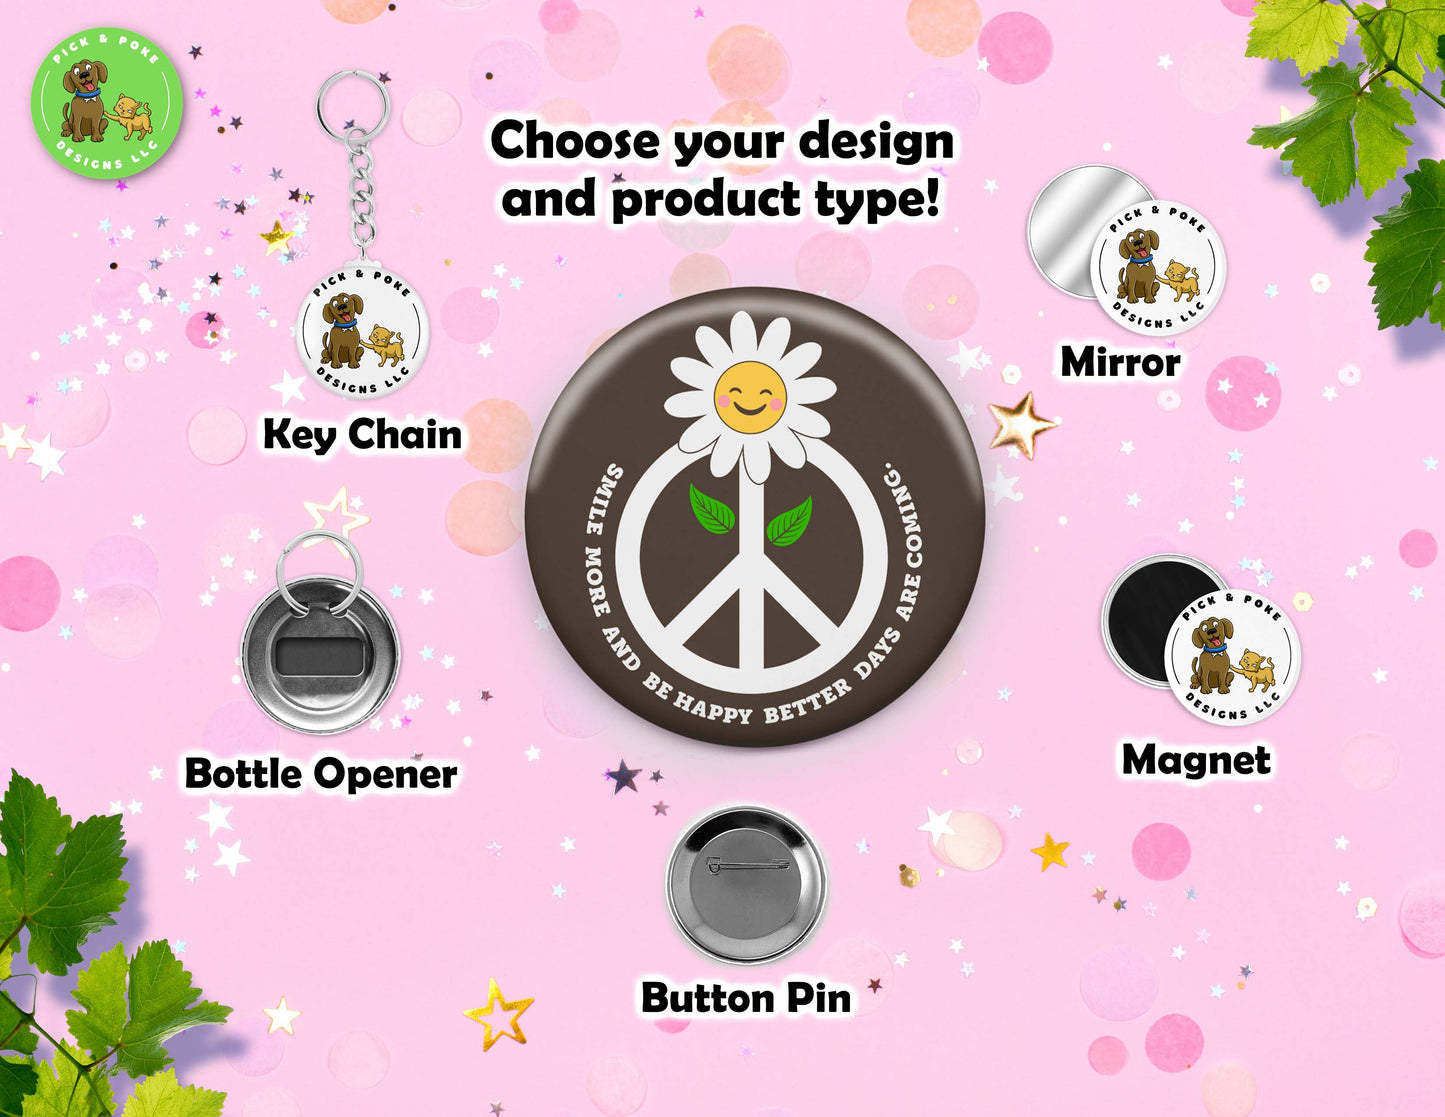 Hippie Flower Power Button Pins